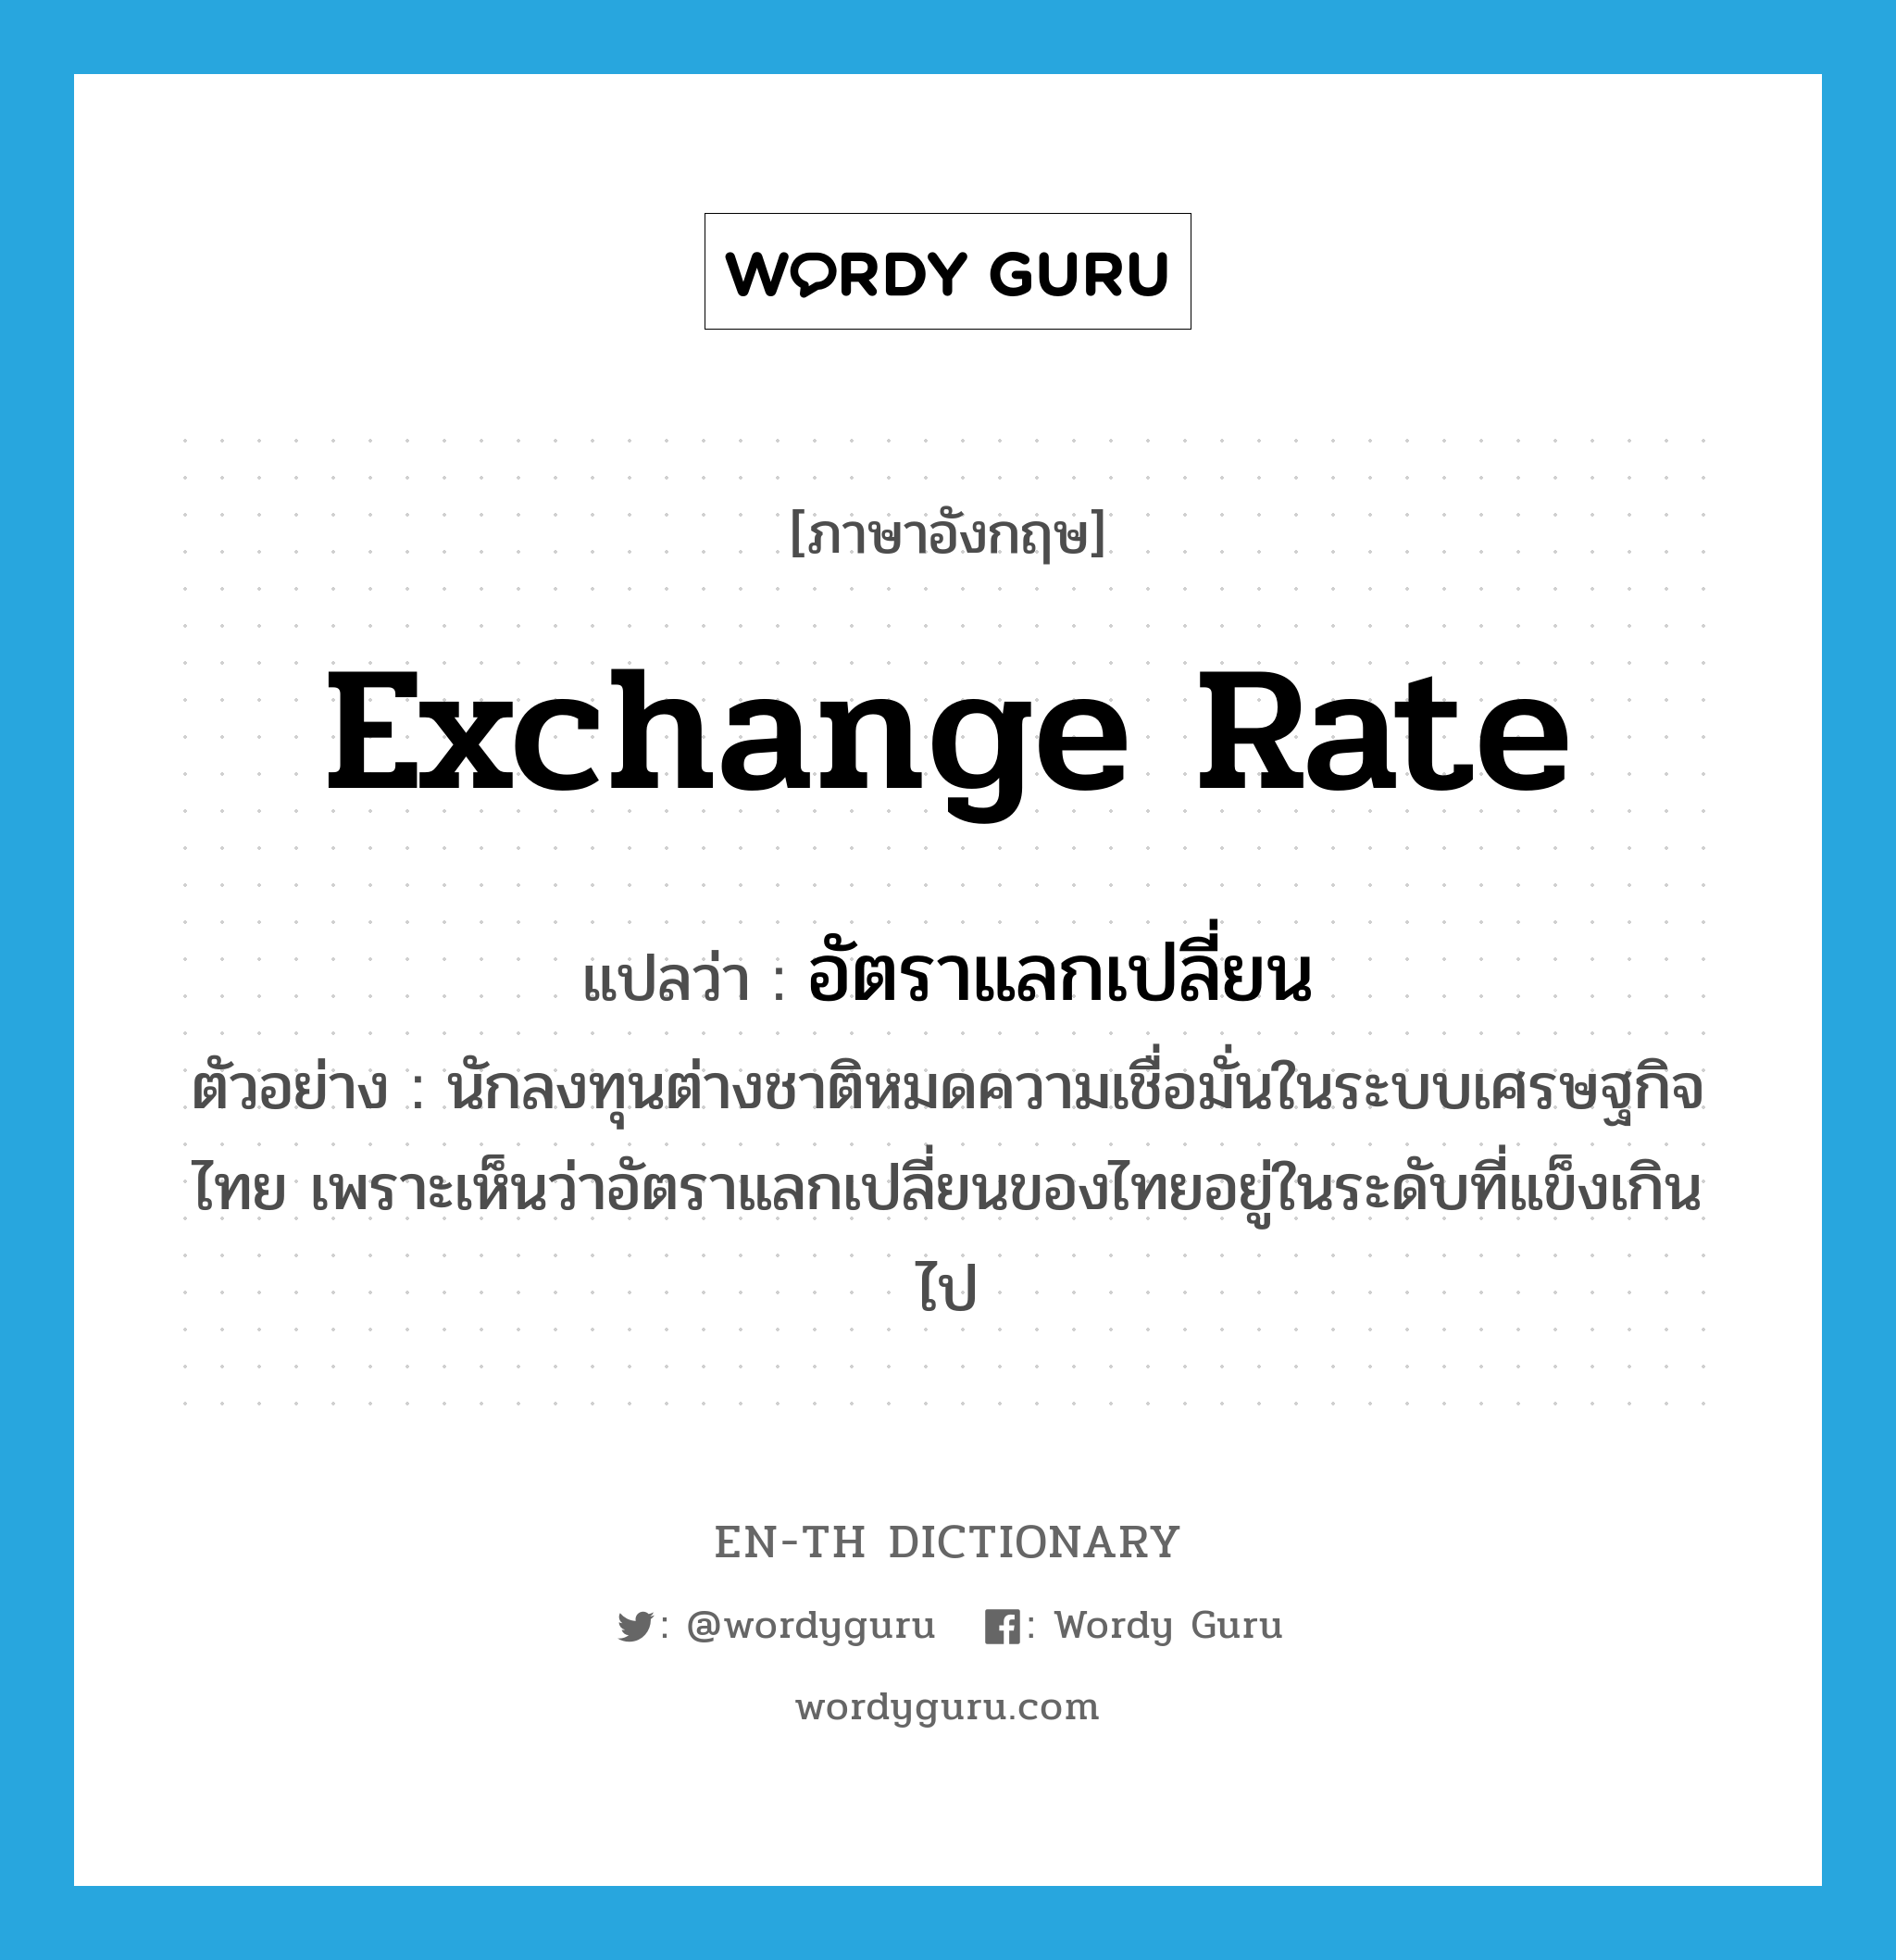 exchange rate แปลว่า?, คำศัพท์ภาษาอังกฤษ exchange rate แปลว่า อัตราแลกเปลี่ยน ประเภท N ตัวอย่าง นักลงทุนต่างชาติหมดความเชื่อมั่นในระบบเศรษฐกิจไทย เพราะเห็นว่าอัตราแลกเปลี่ยนของไทยอยู่ในระดับที่แข็งเกินไป หมวด N